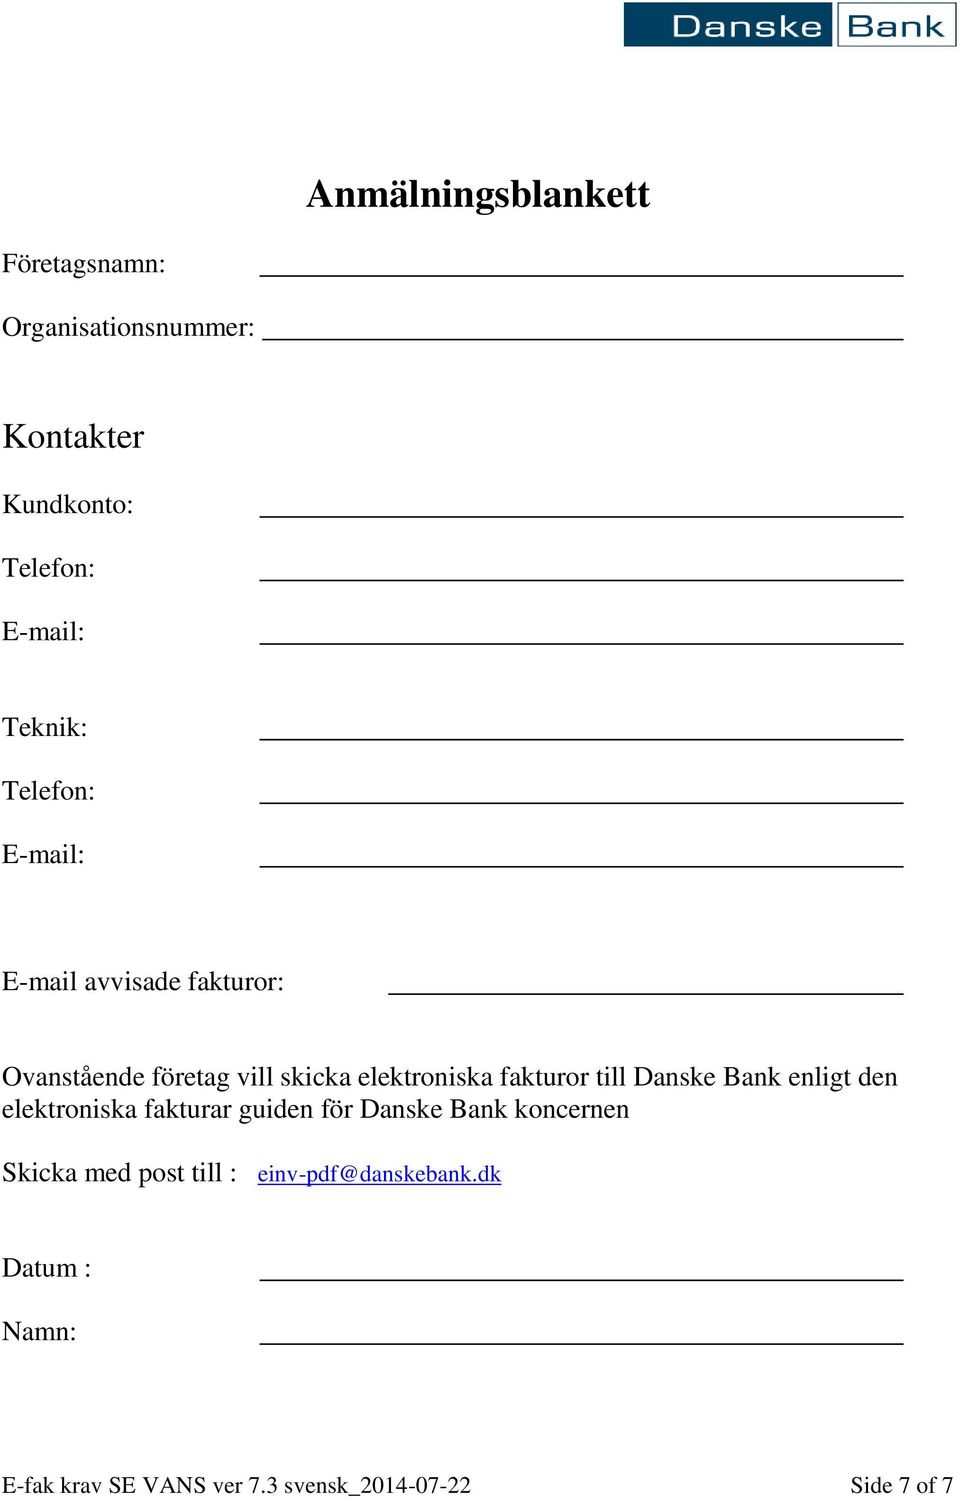 fakturor till Danske Bank enligt den elektroniska fakturar guiden för Danske Bank koncernen Skicka med